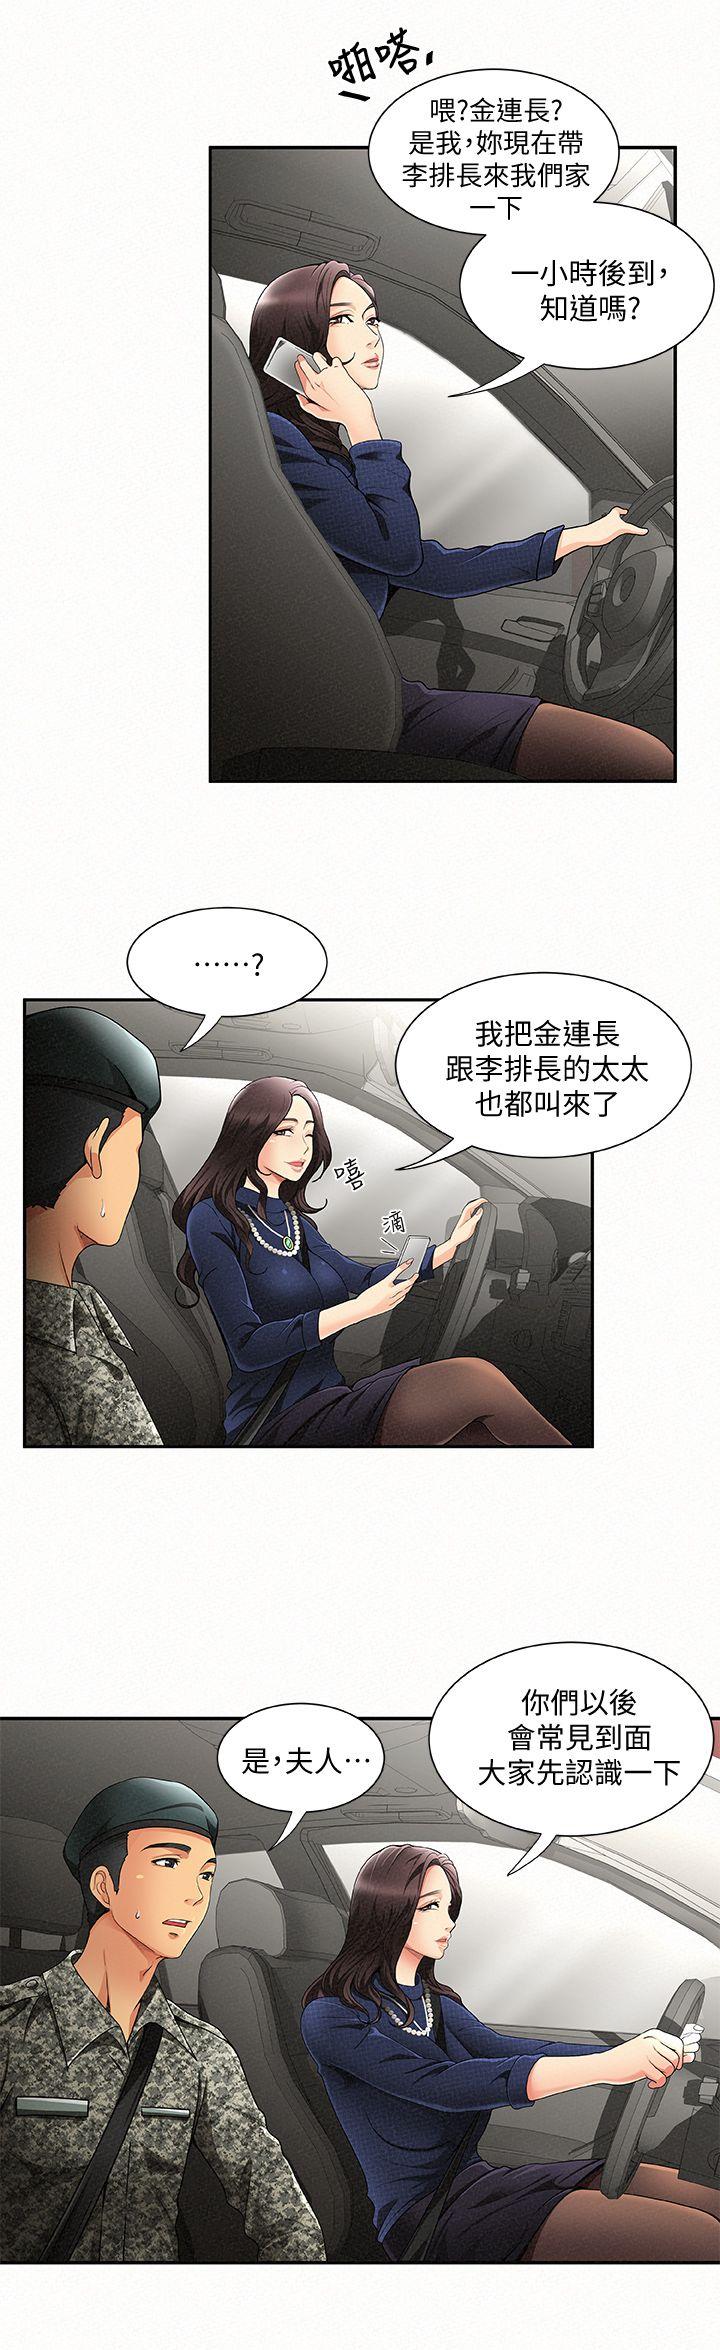 韩国污漫画 報告夫人 第1话-给大头兵的爽缺 30